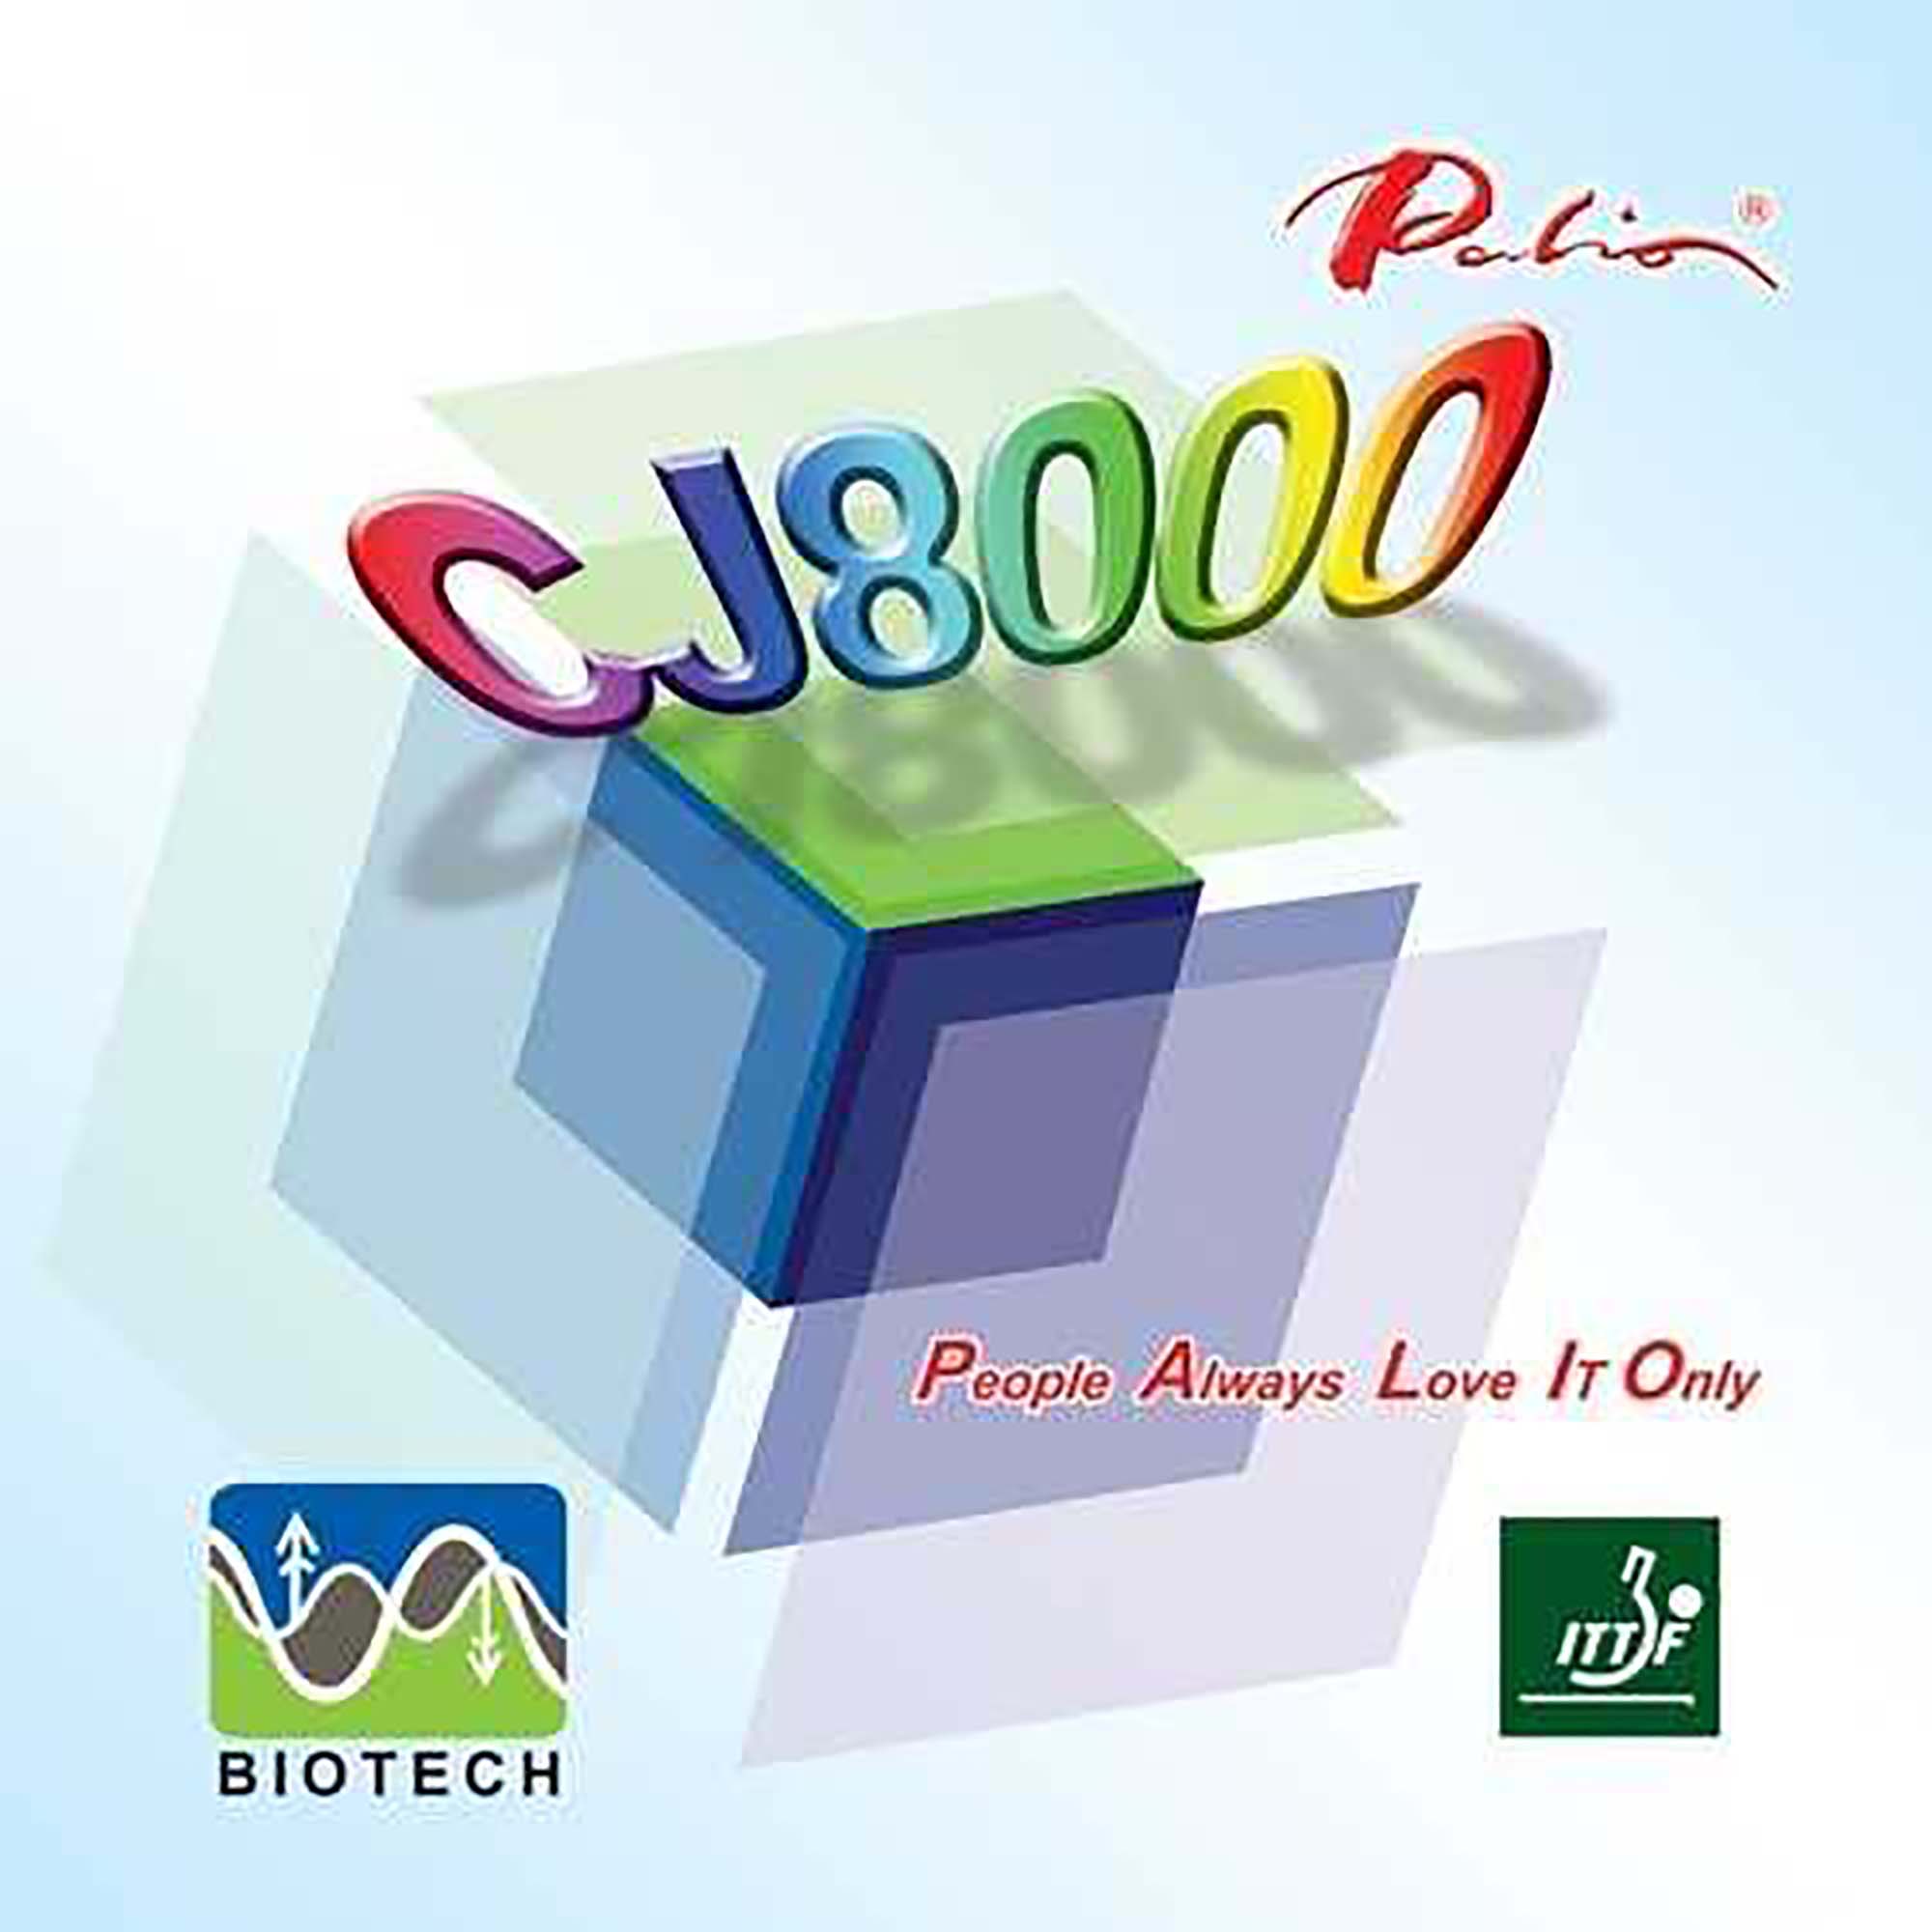 Palio Belag CJ 8000 Biotech 42-44° schwarz 1,8 mm